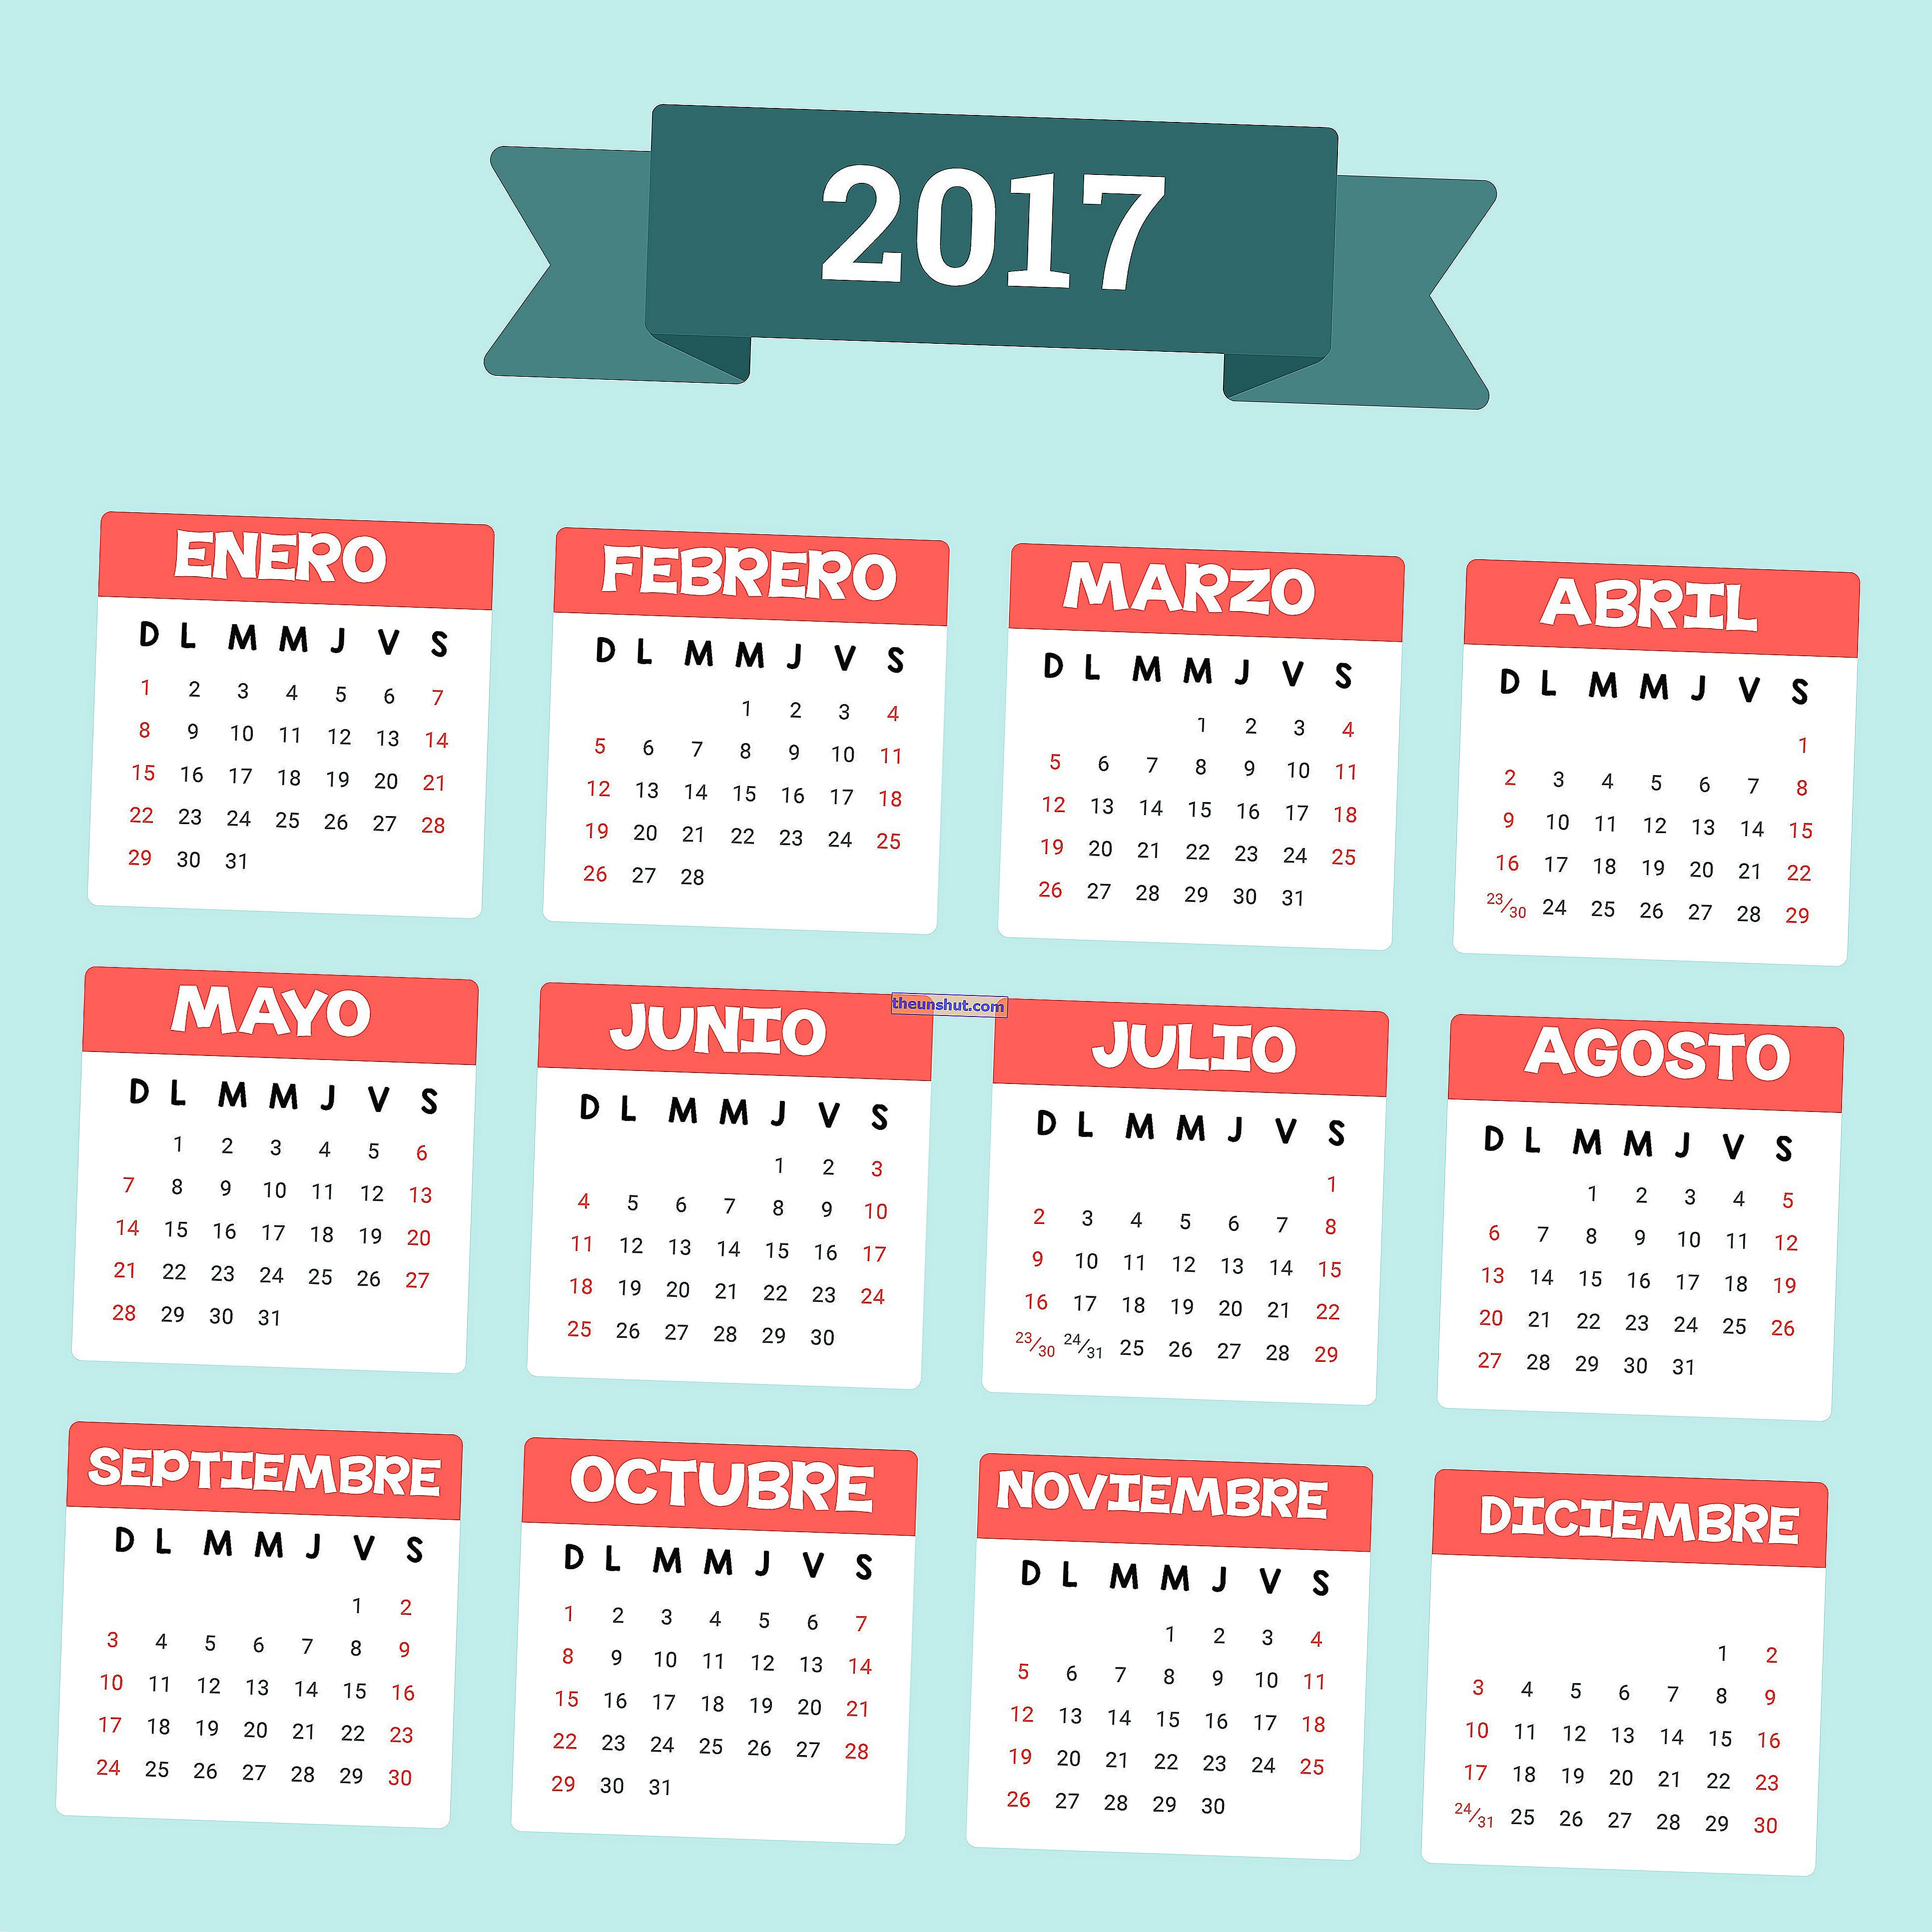 Calendario accademico 2017